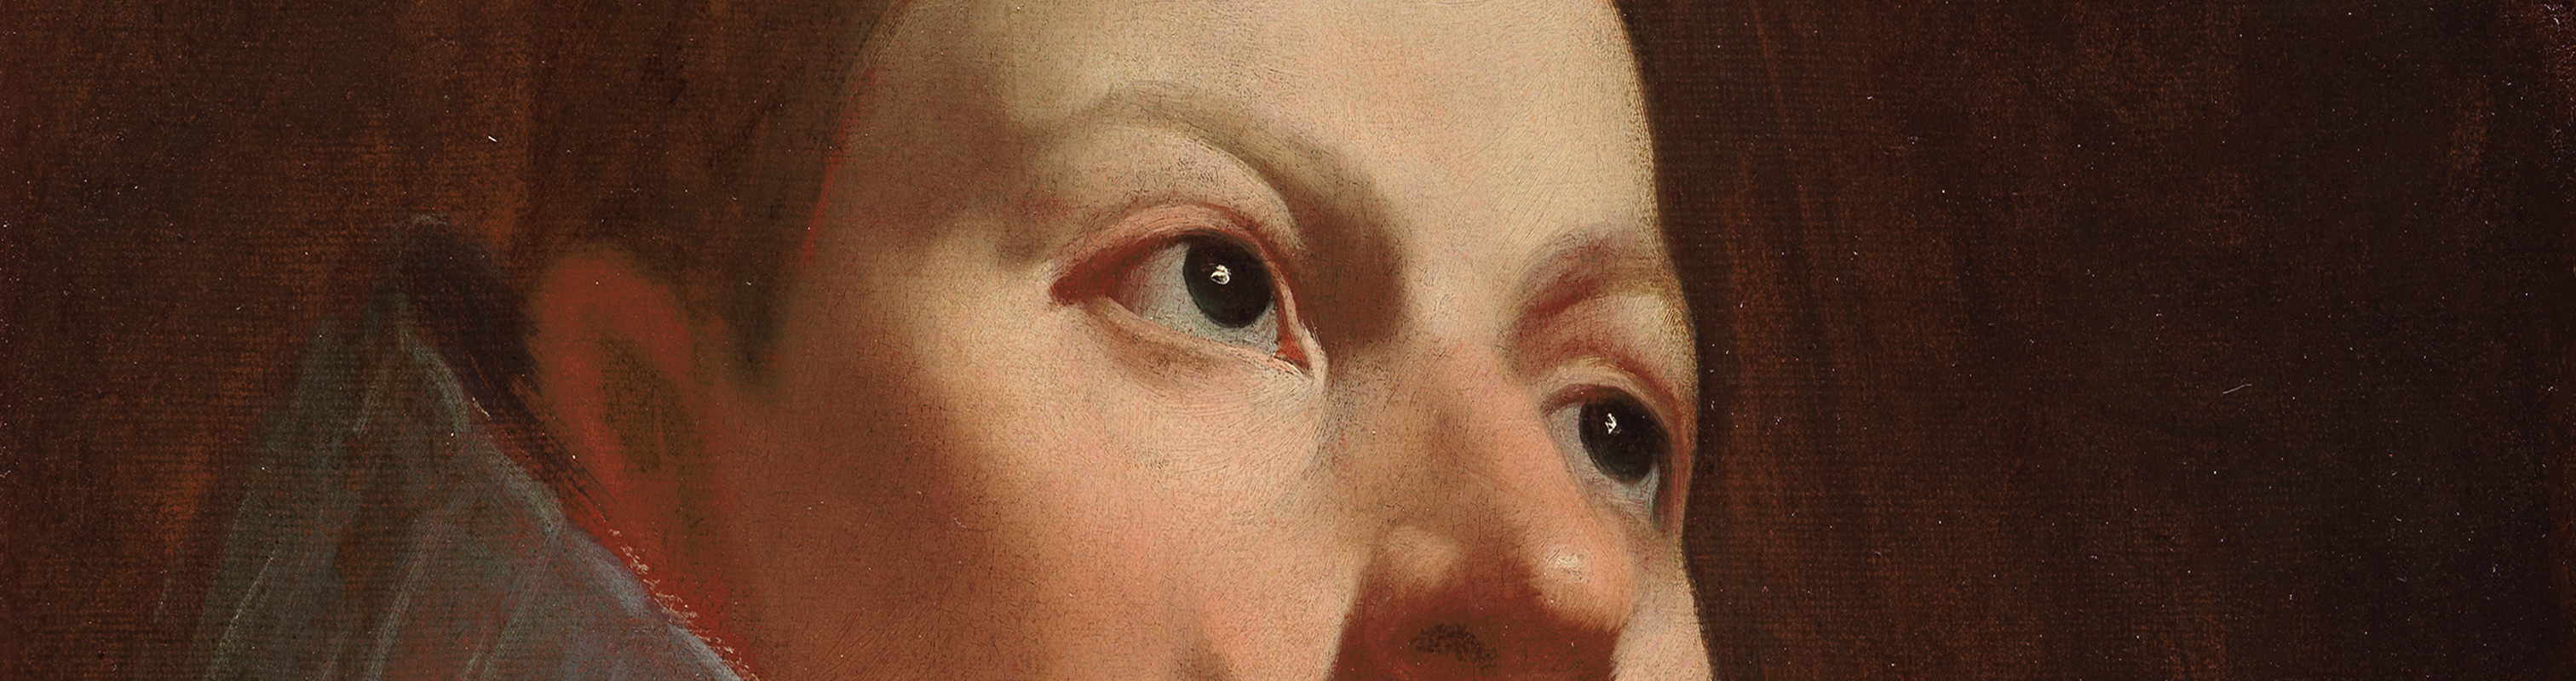 El Museo del Prado expone por primera vez en sus salas el Retrato de Felipe III de Velázquez